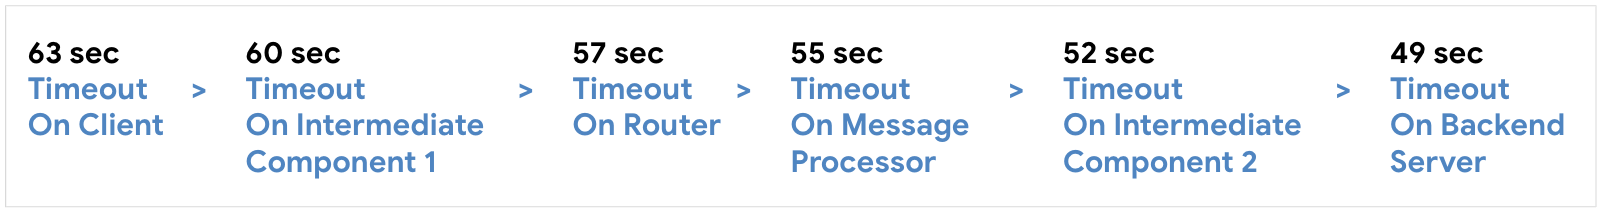 Configura el tiempo de espera en el cliente a los 63 segundos, después el componente intermedio 1 a los 60 segundos, luego el router a los 57 segundos, después Procesador de mensajes a los 55 segundos, luego el componente intermedio 2 a los 52 segundos y el servidor de backend a los 59 segundos.